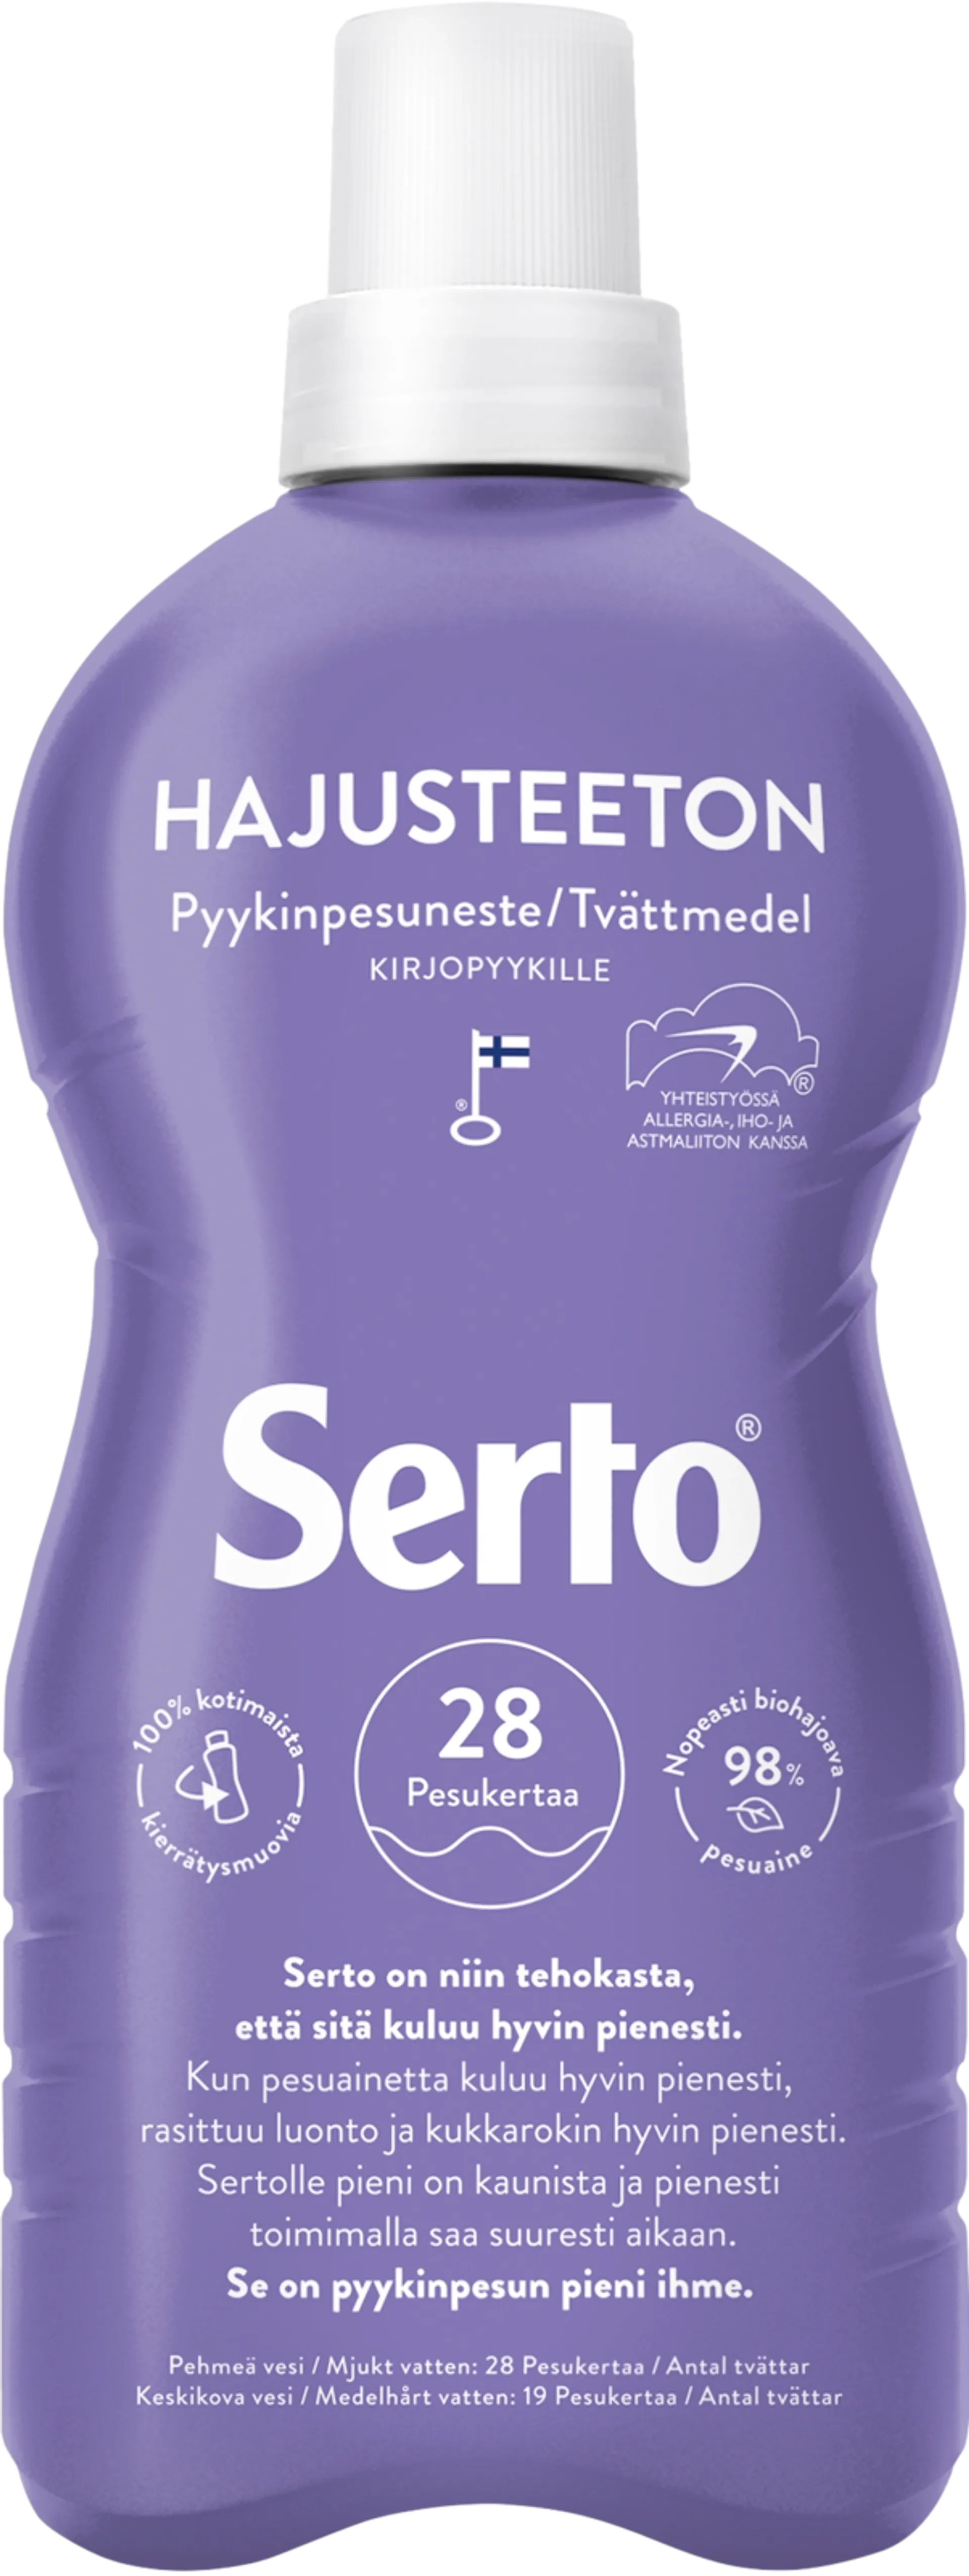 Serto Hajusteeton Pyykinpesuneste 750 ml